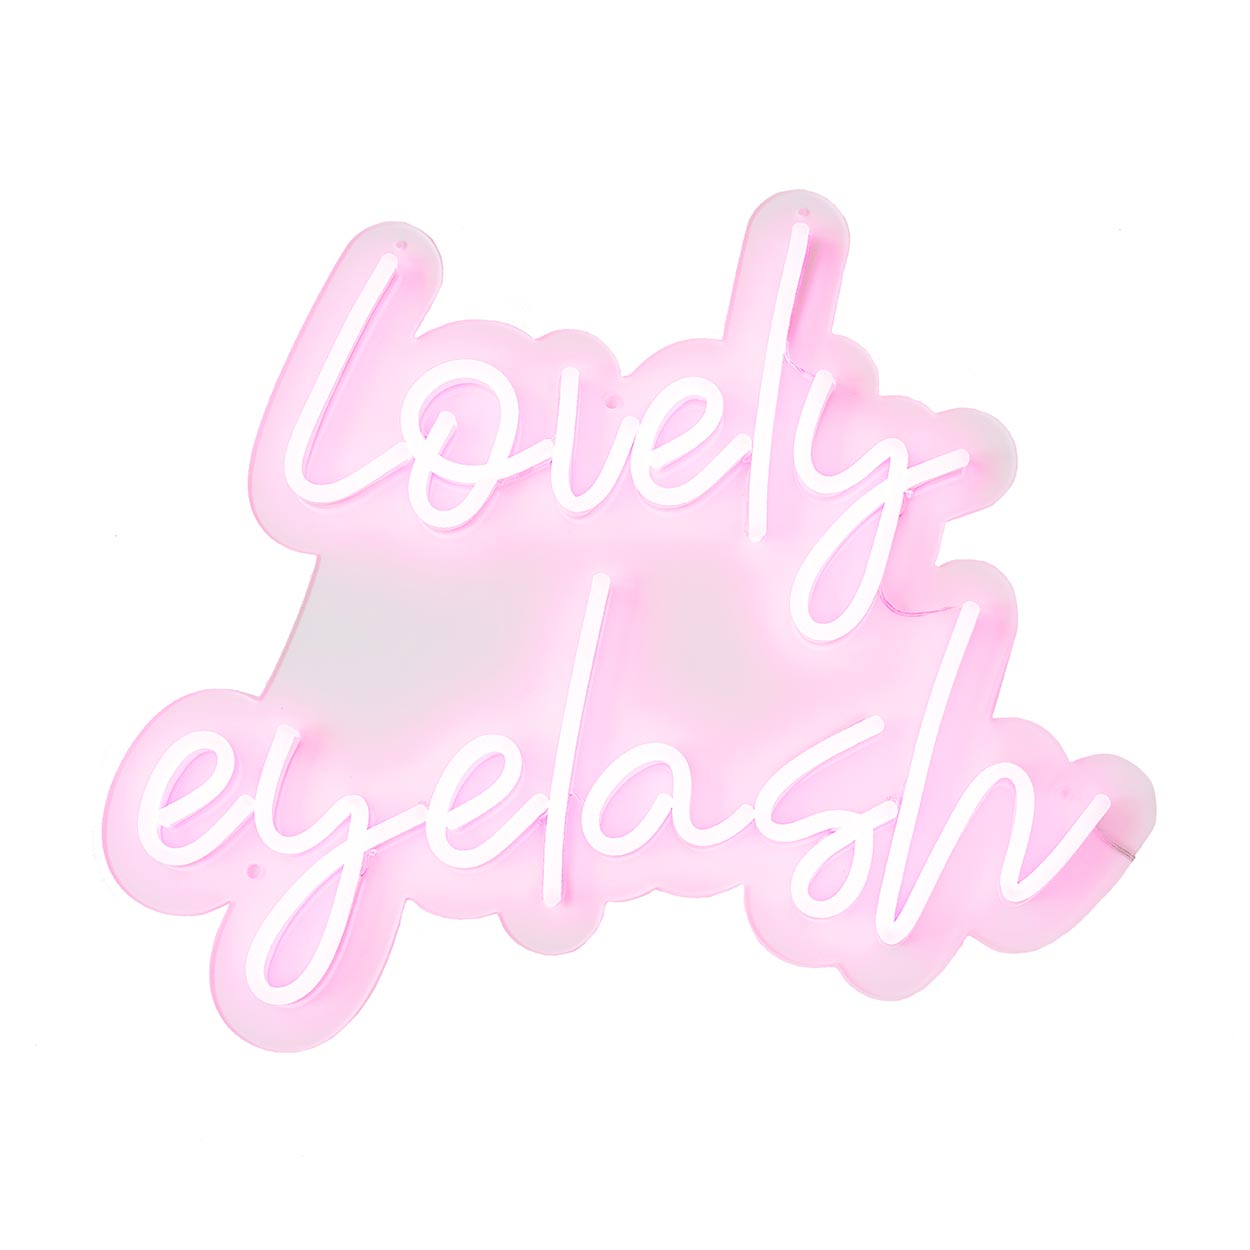 【ネオンサイン】lovely eyelash(A)